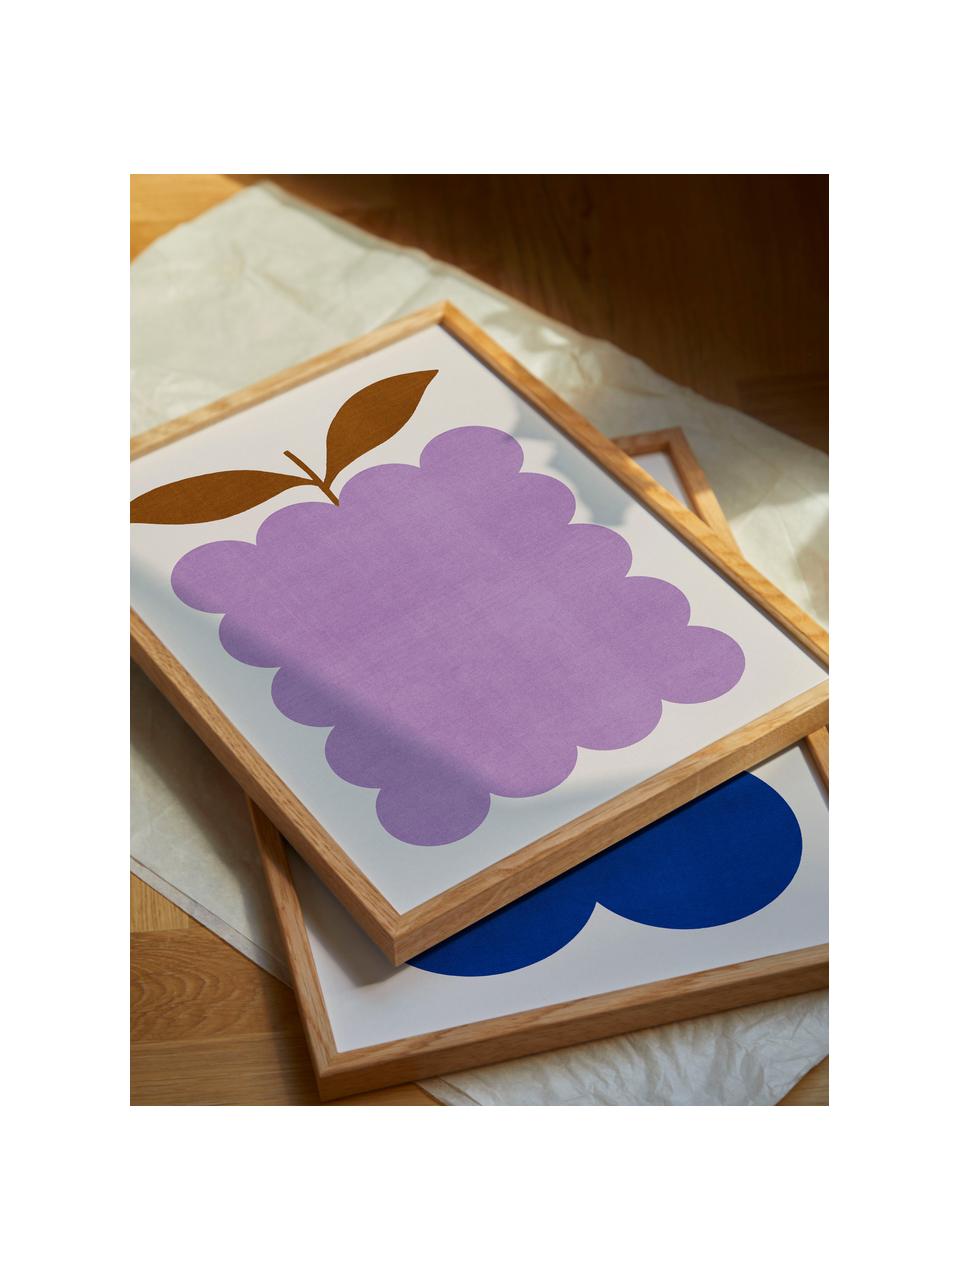 Plakat Lilac Berry, 210 g matowy papier, druk cyfrowy z 10 farbami odpornymi na promieniowanie UV, Lila, jasny beżowy, S 30 x W 40 cm